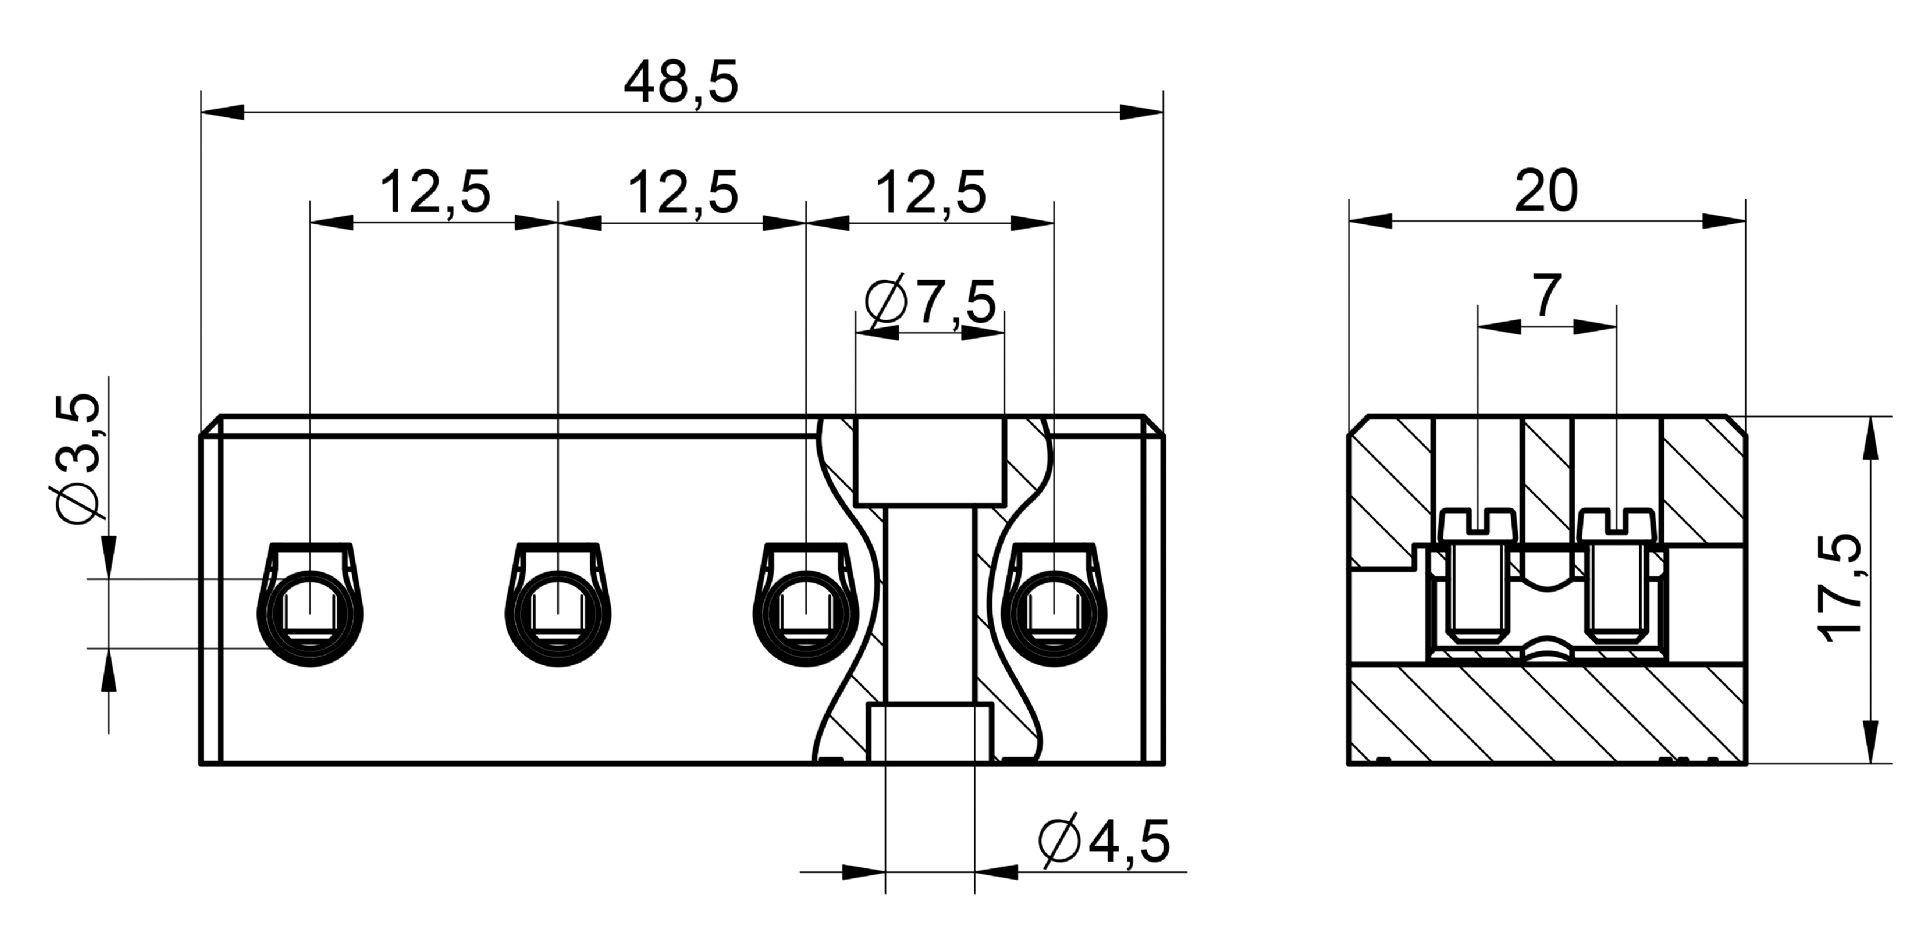 Venta/distribución/mayoristaRegletas con aislante cerámico para realizar conexiones eléctricas con conductores de cobre en instalaciones y/o aparatos con temperatura de trabajo elevadas B6-4E